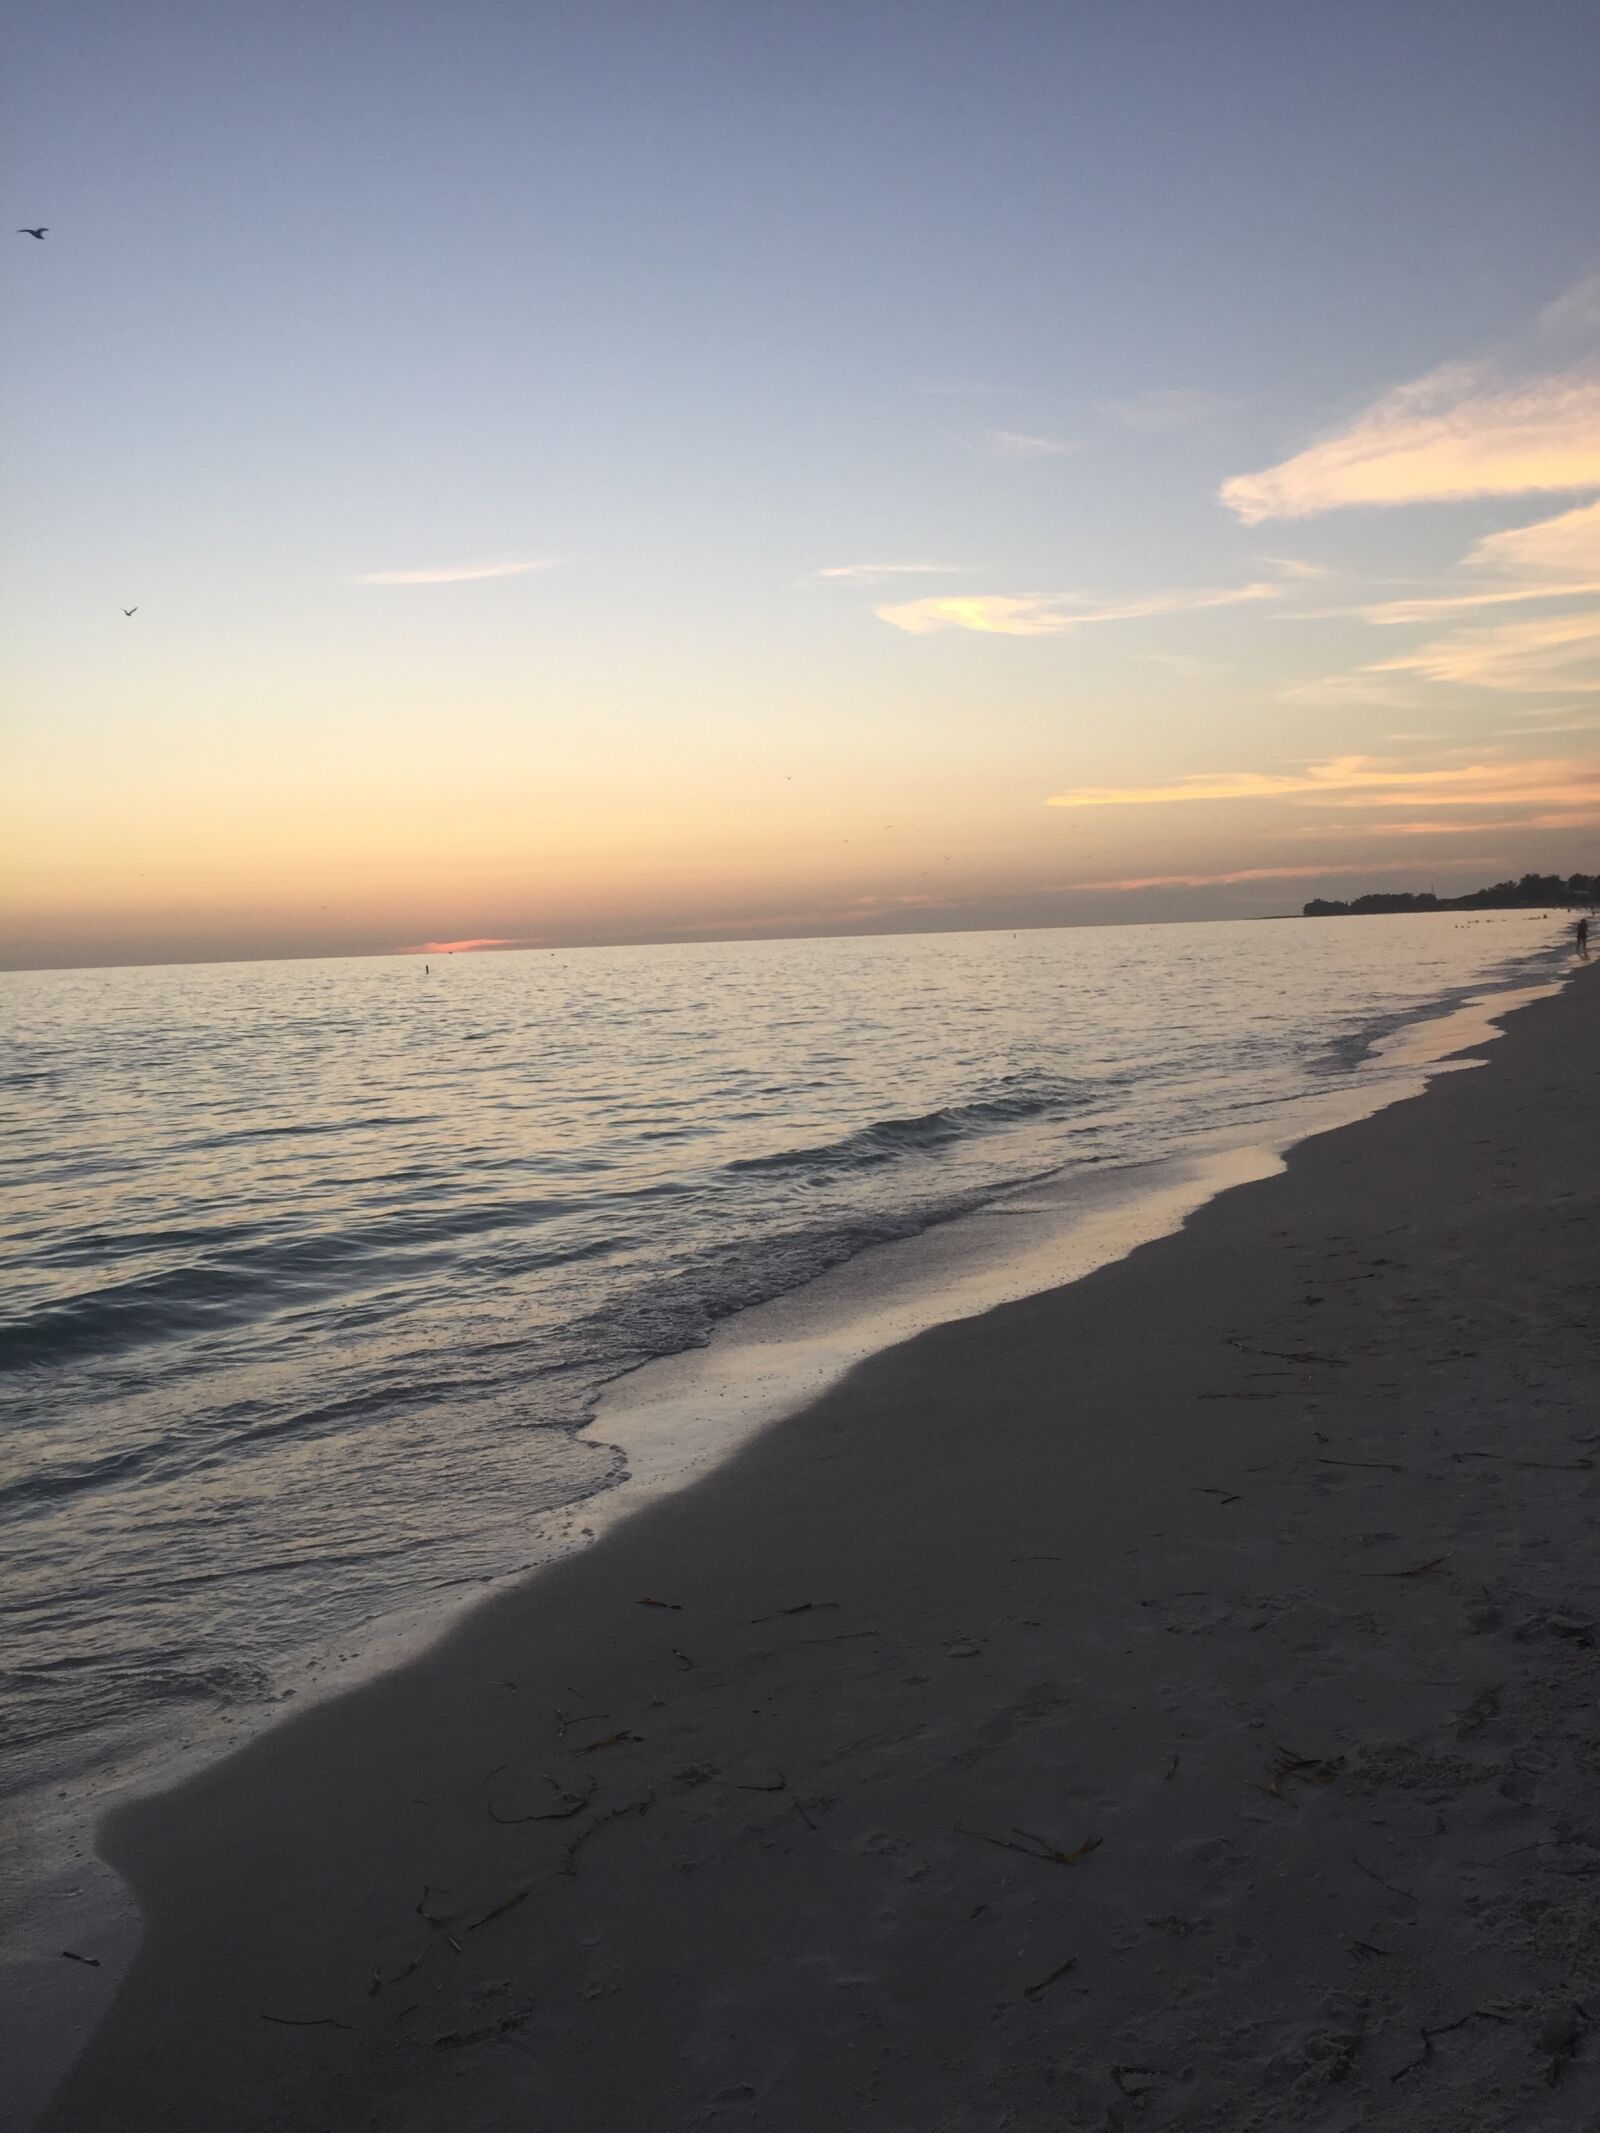 Apple iPhone 6 sample photo. Beach, calm, ocean, peace photography